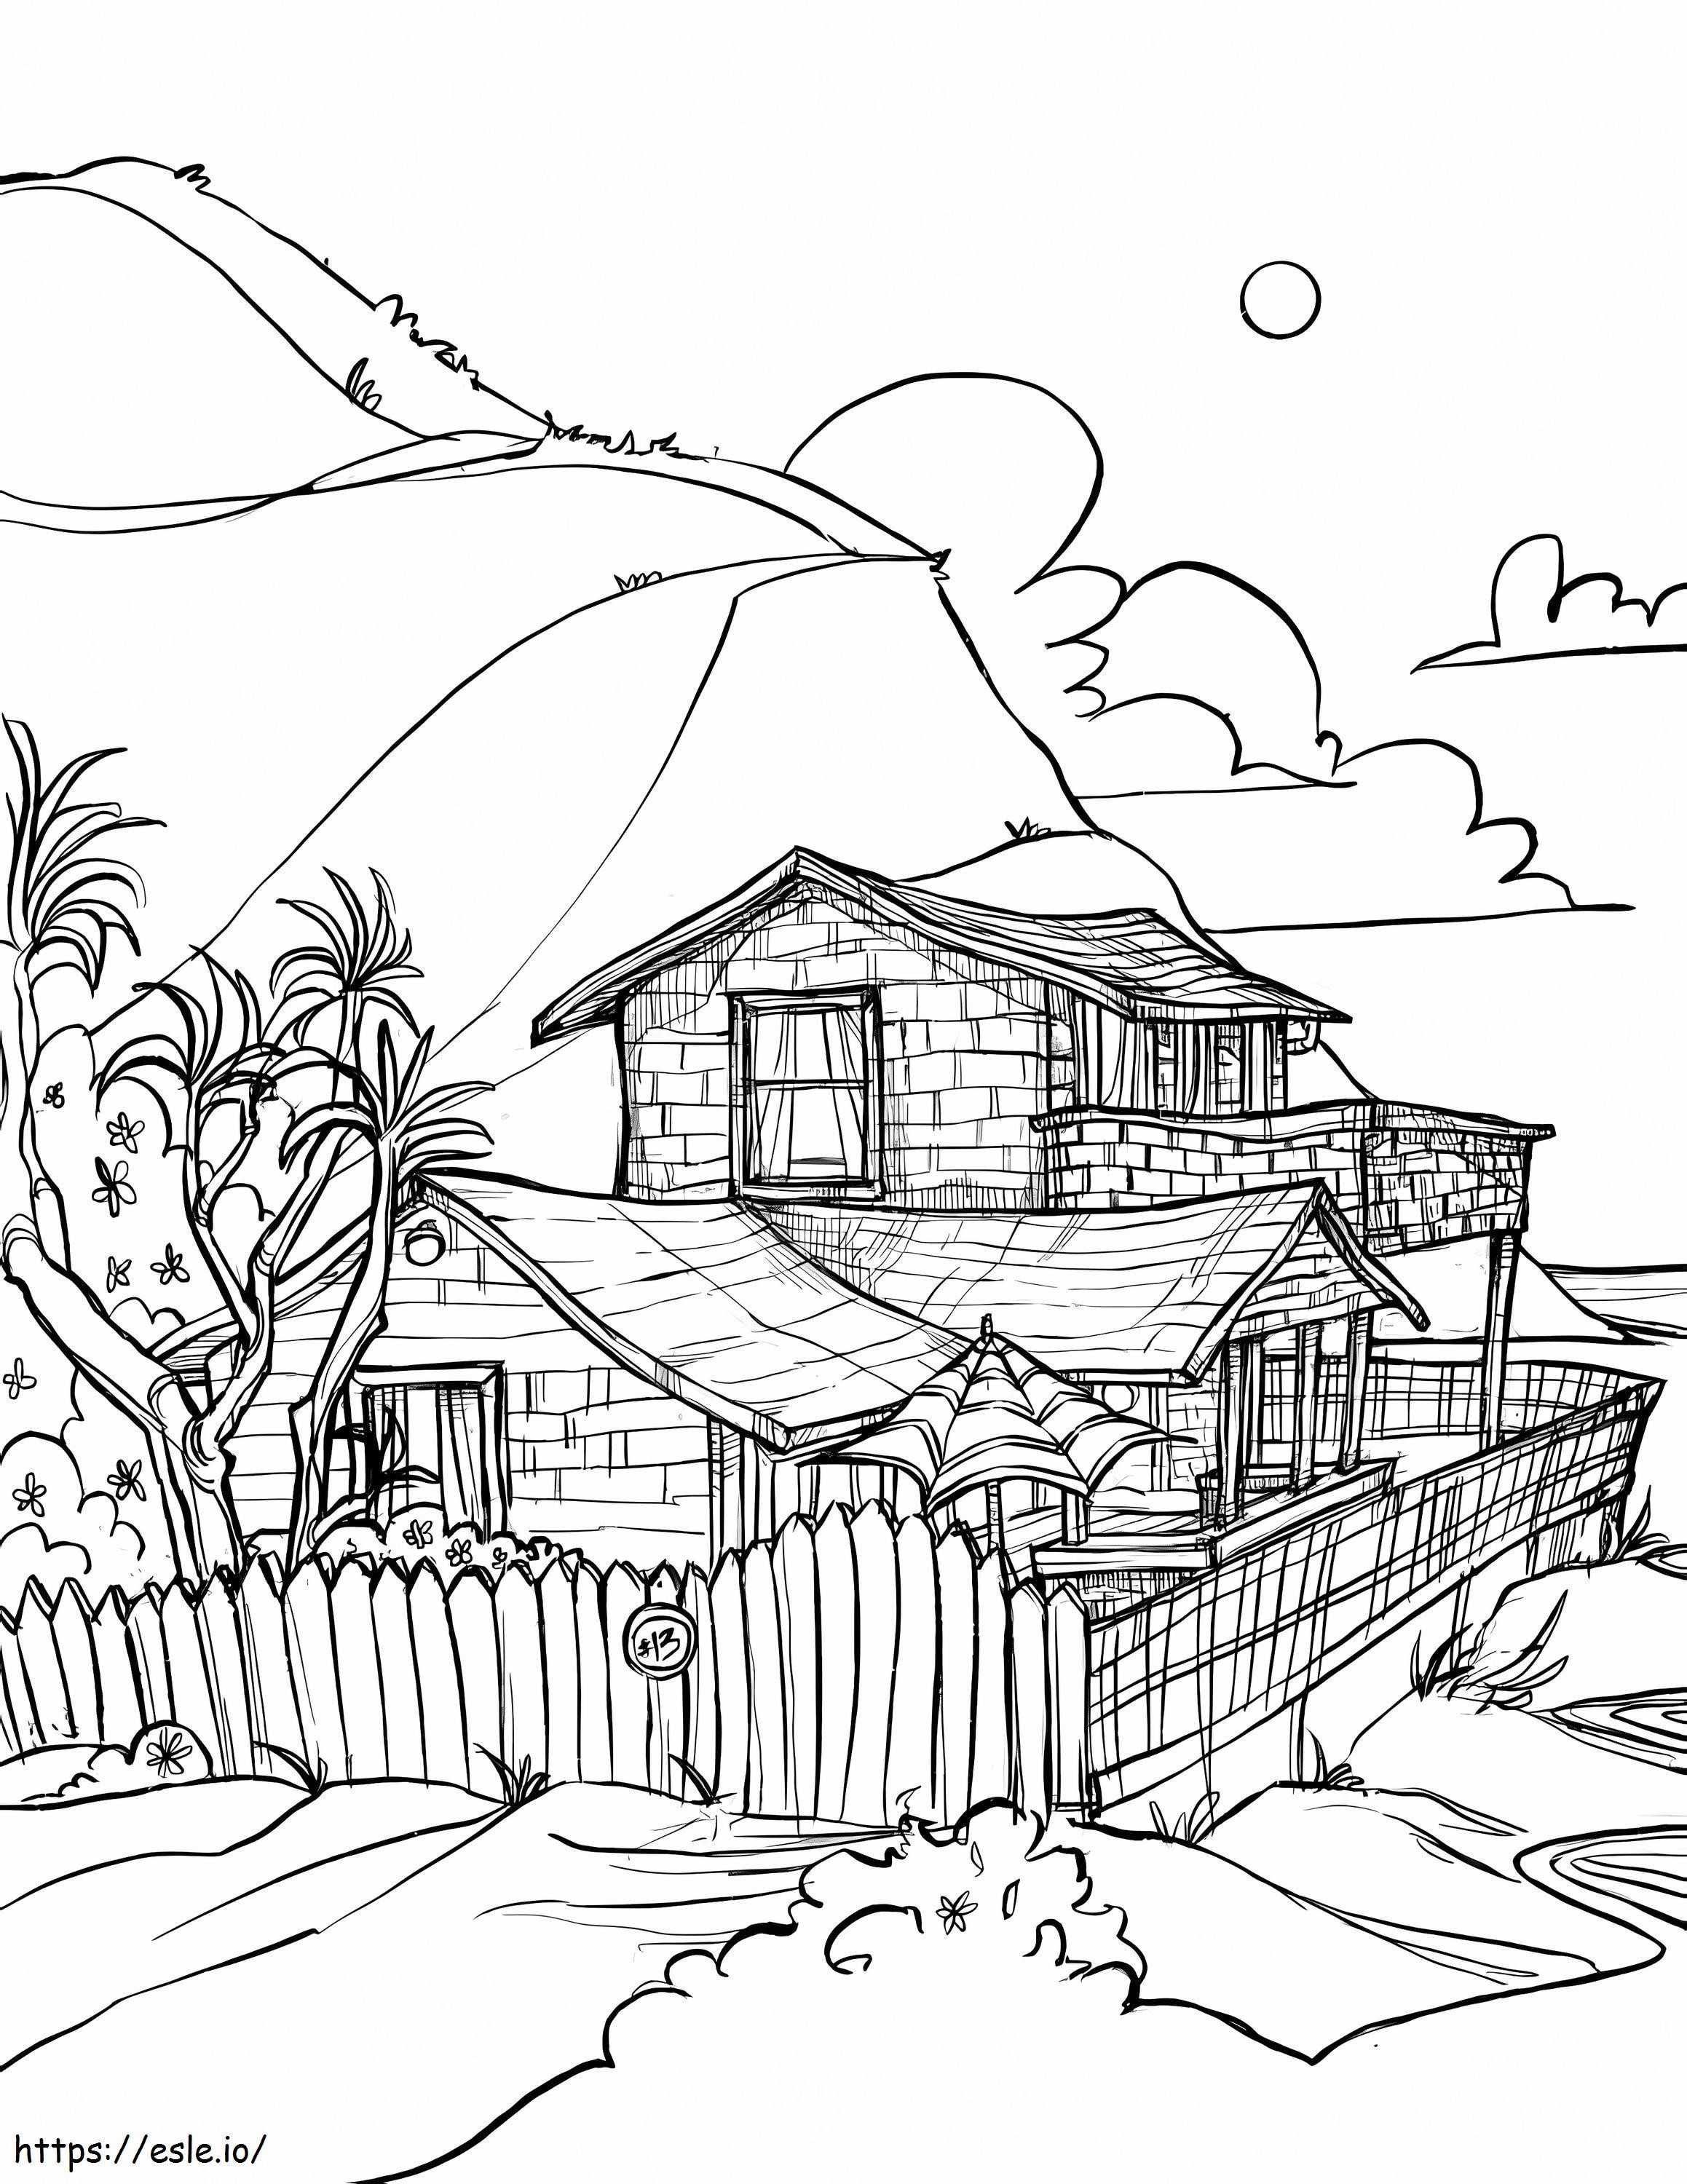 Zeichnungshaus am Strand ausmalbilder